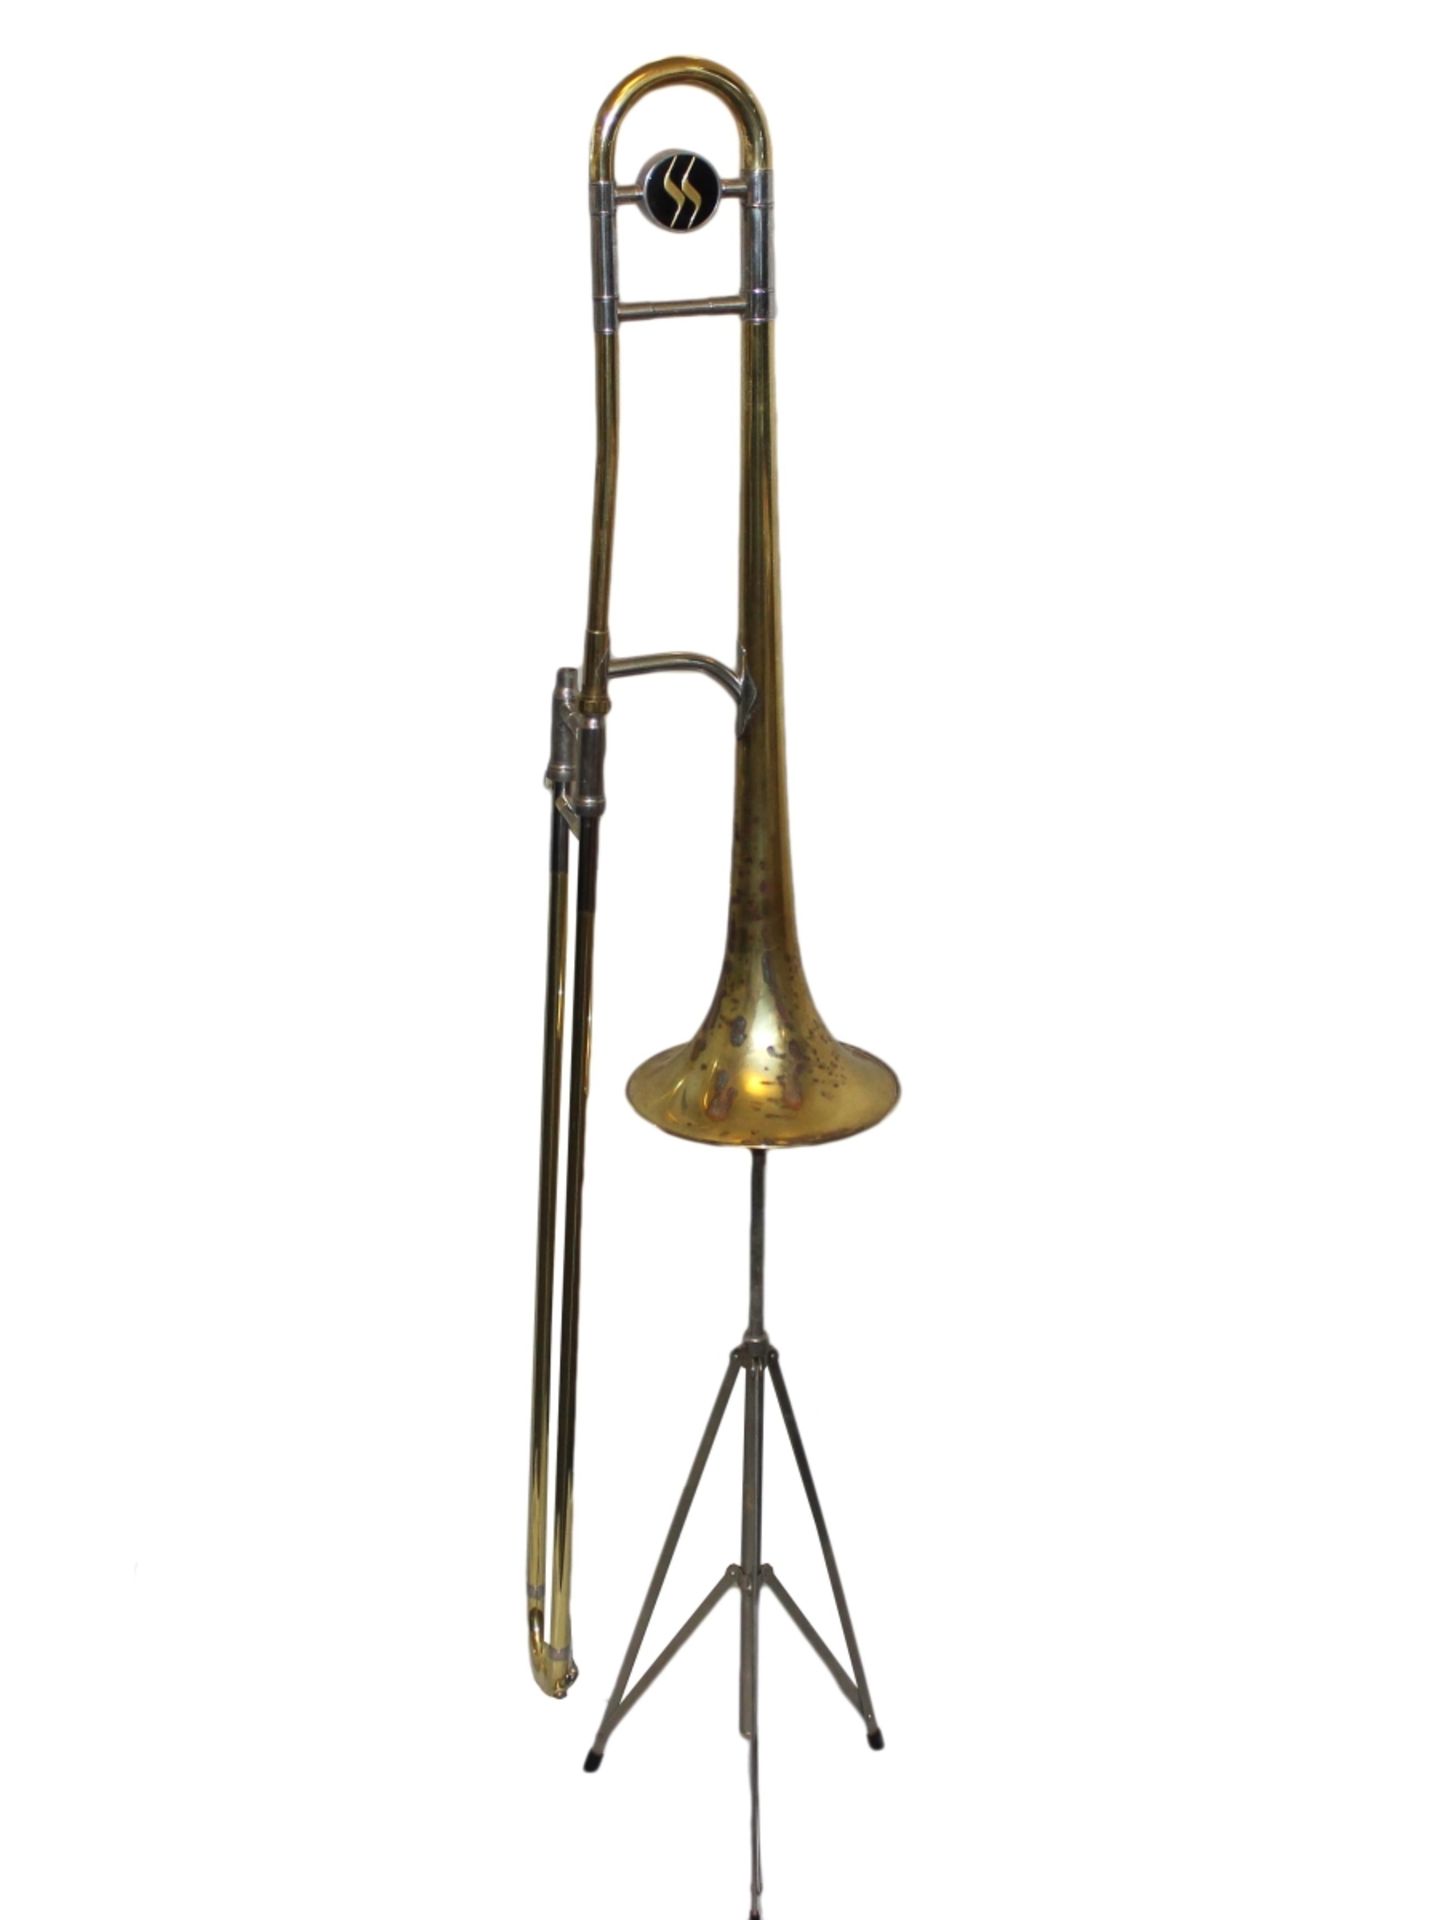 Musikinstrument- Posaune bez. Jupiter, anbei Ständer, Messing-Korpus, Korrosionsspuren, Mundstück